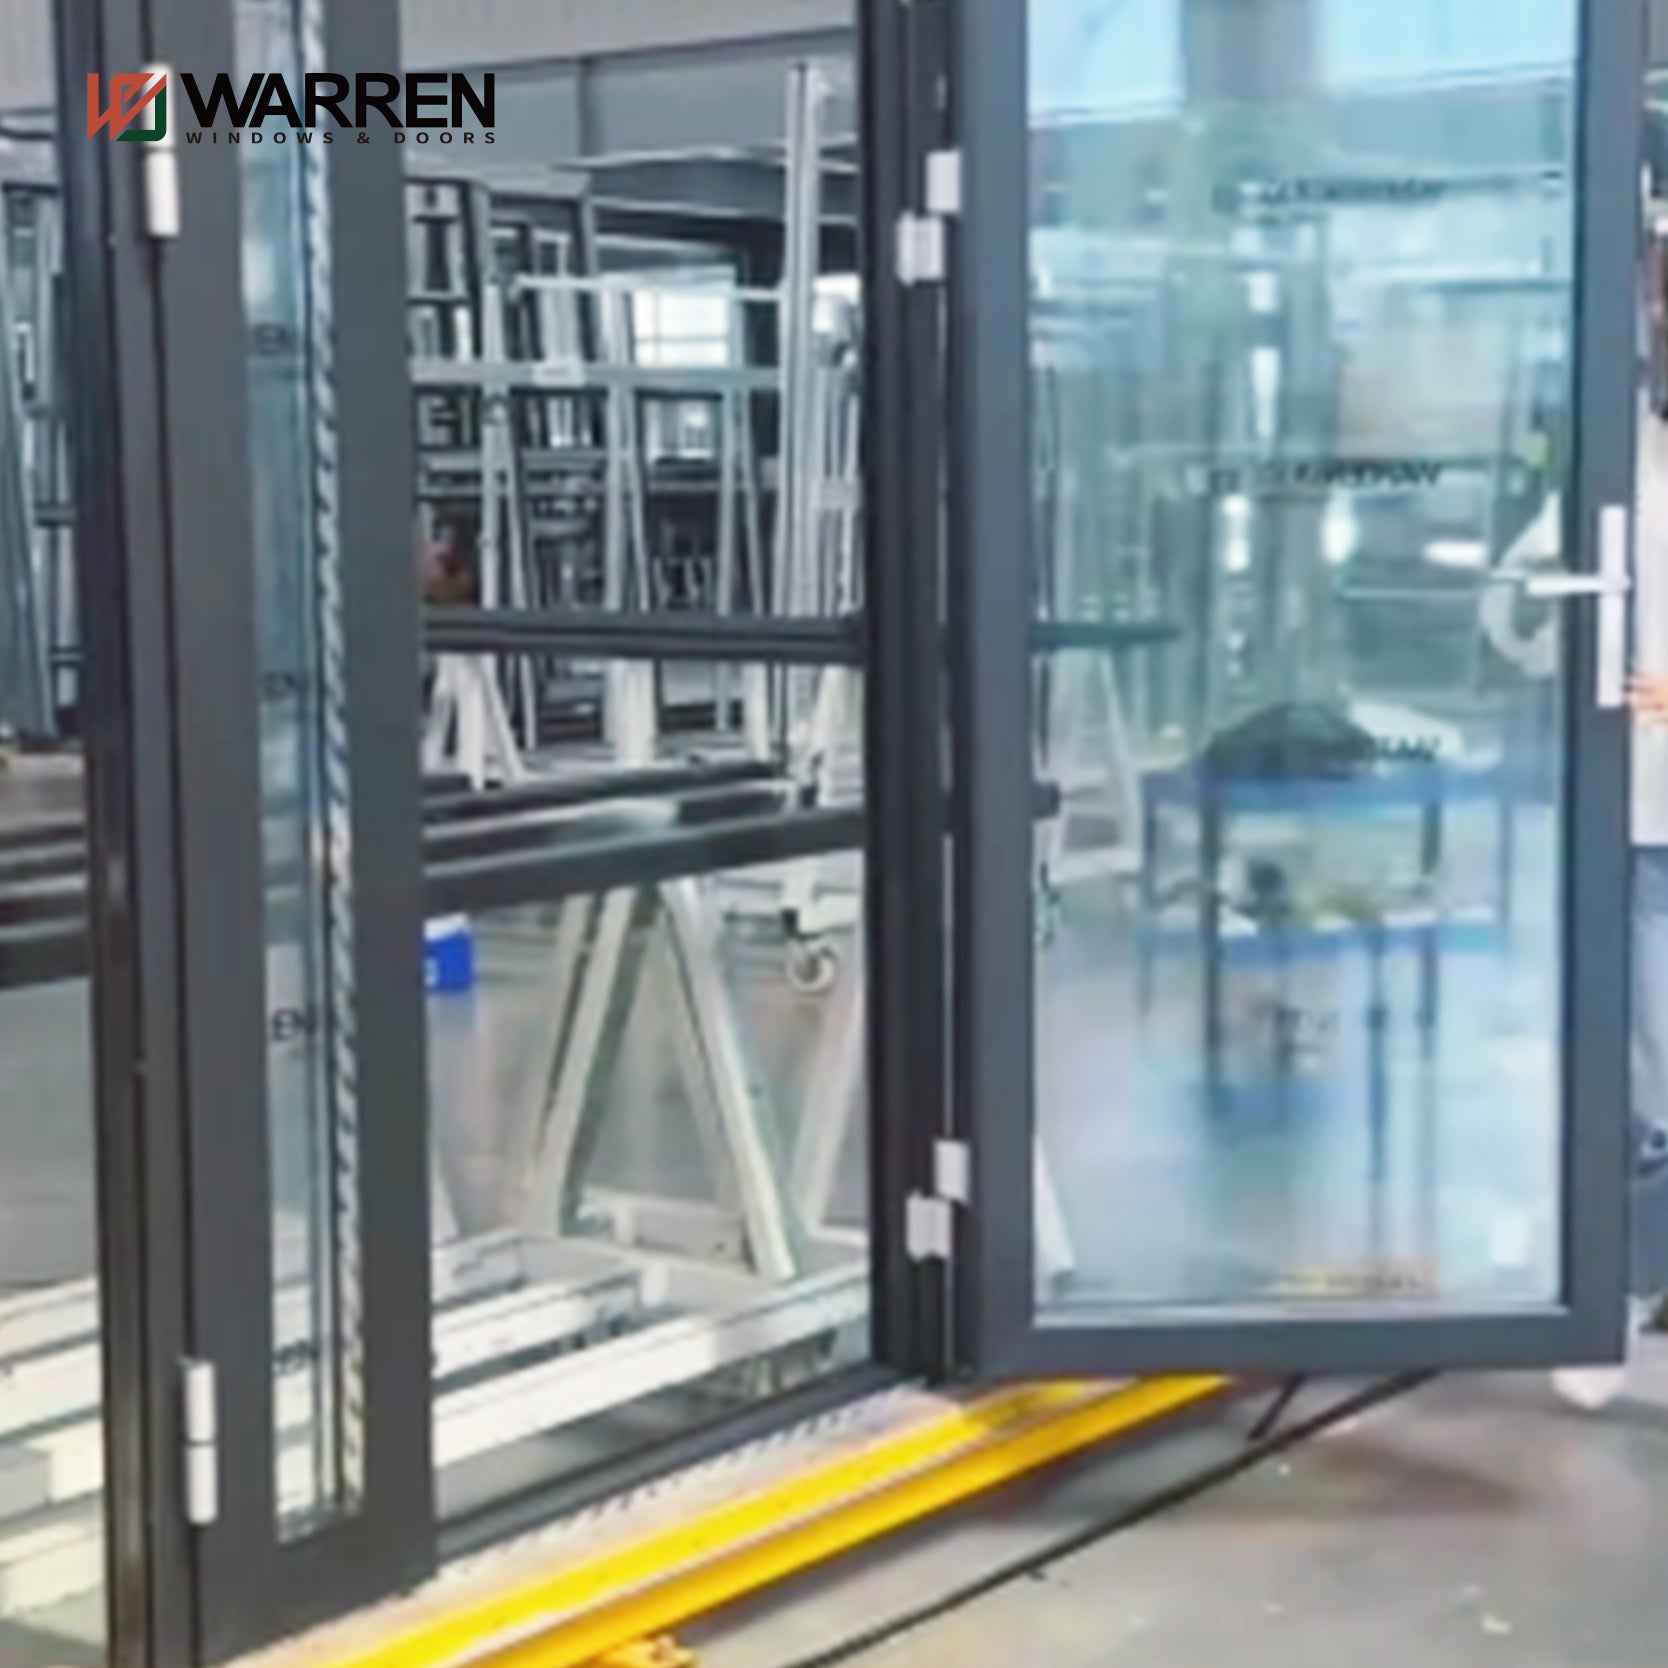 Warren Commercial Aluminum Soundproof Double Glass French Doors Glass Door Asymmetric Design Aluminum Door